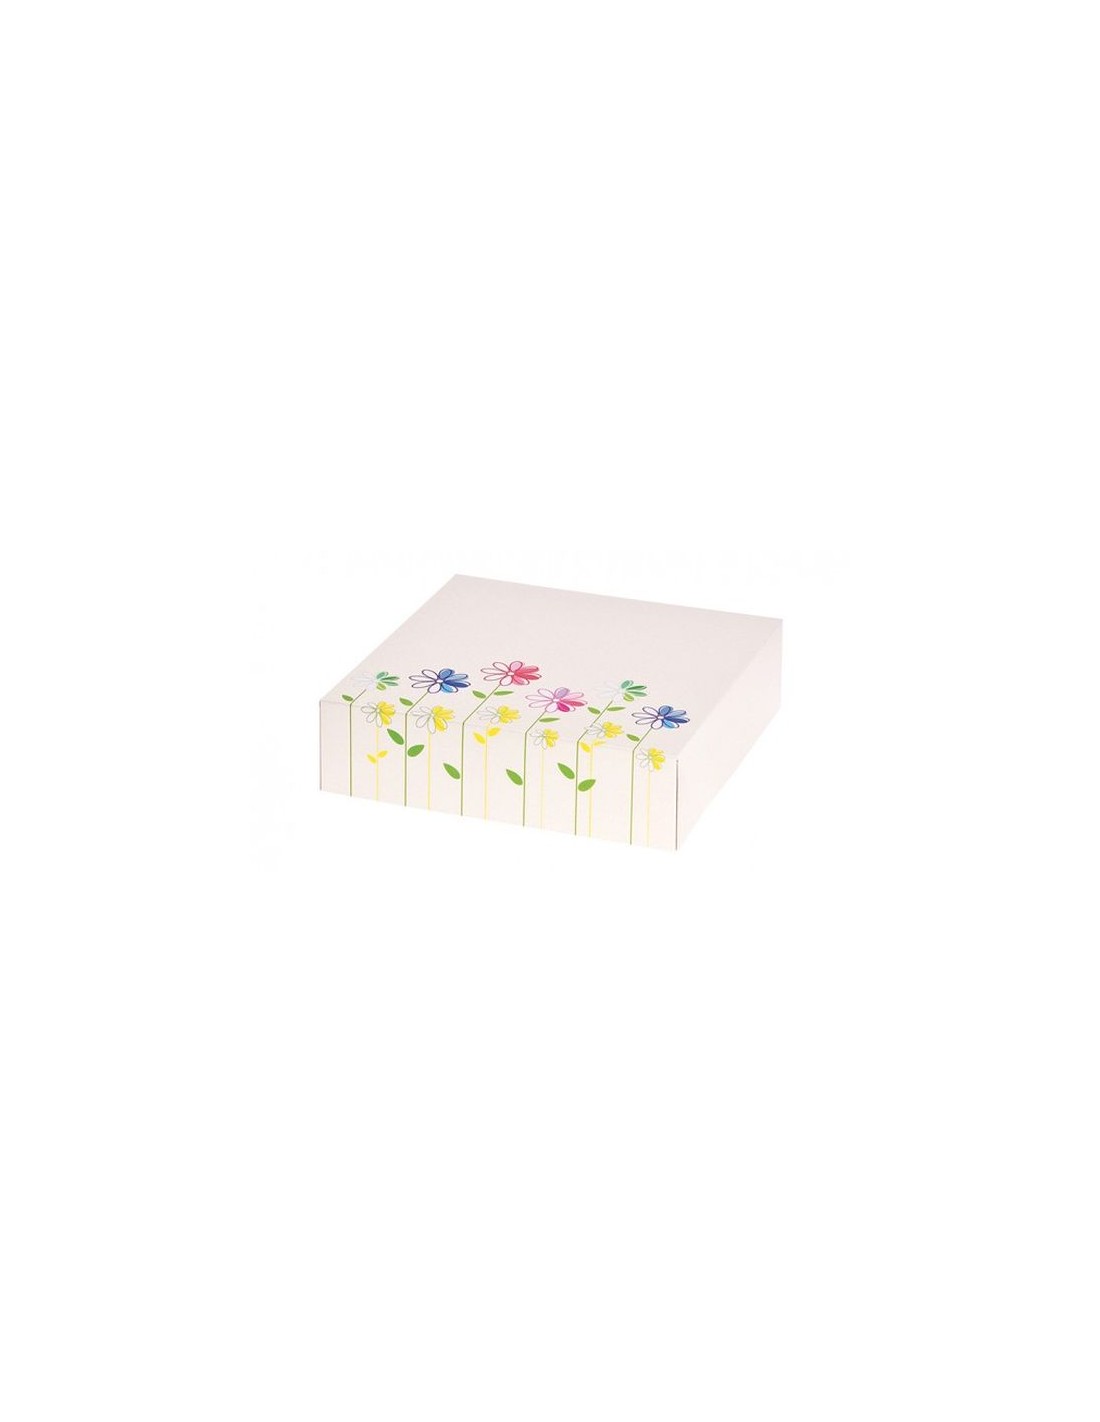 Scatola porta torta rettangolare con fiori - 32 cm x 42 cm x 10 cm H - 1